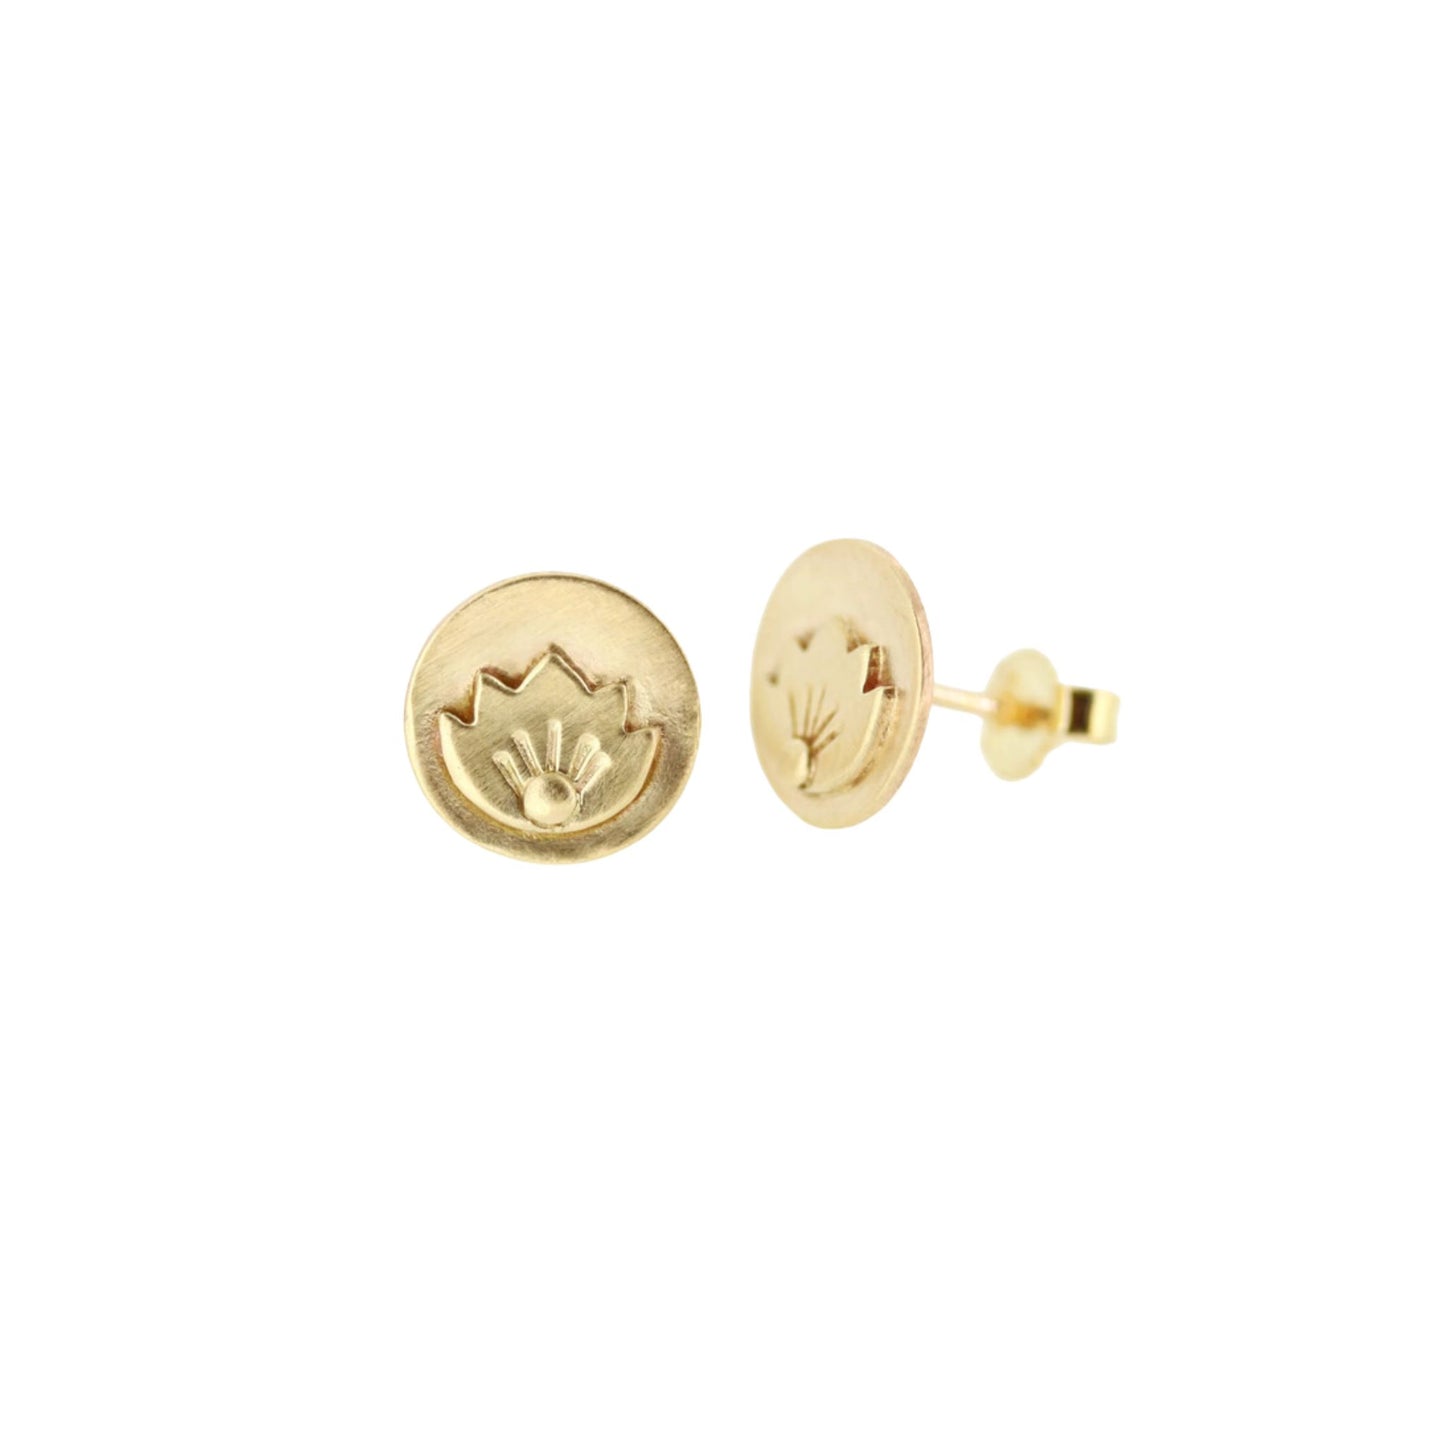 Gold lotus stud earrings by Jen Lesea